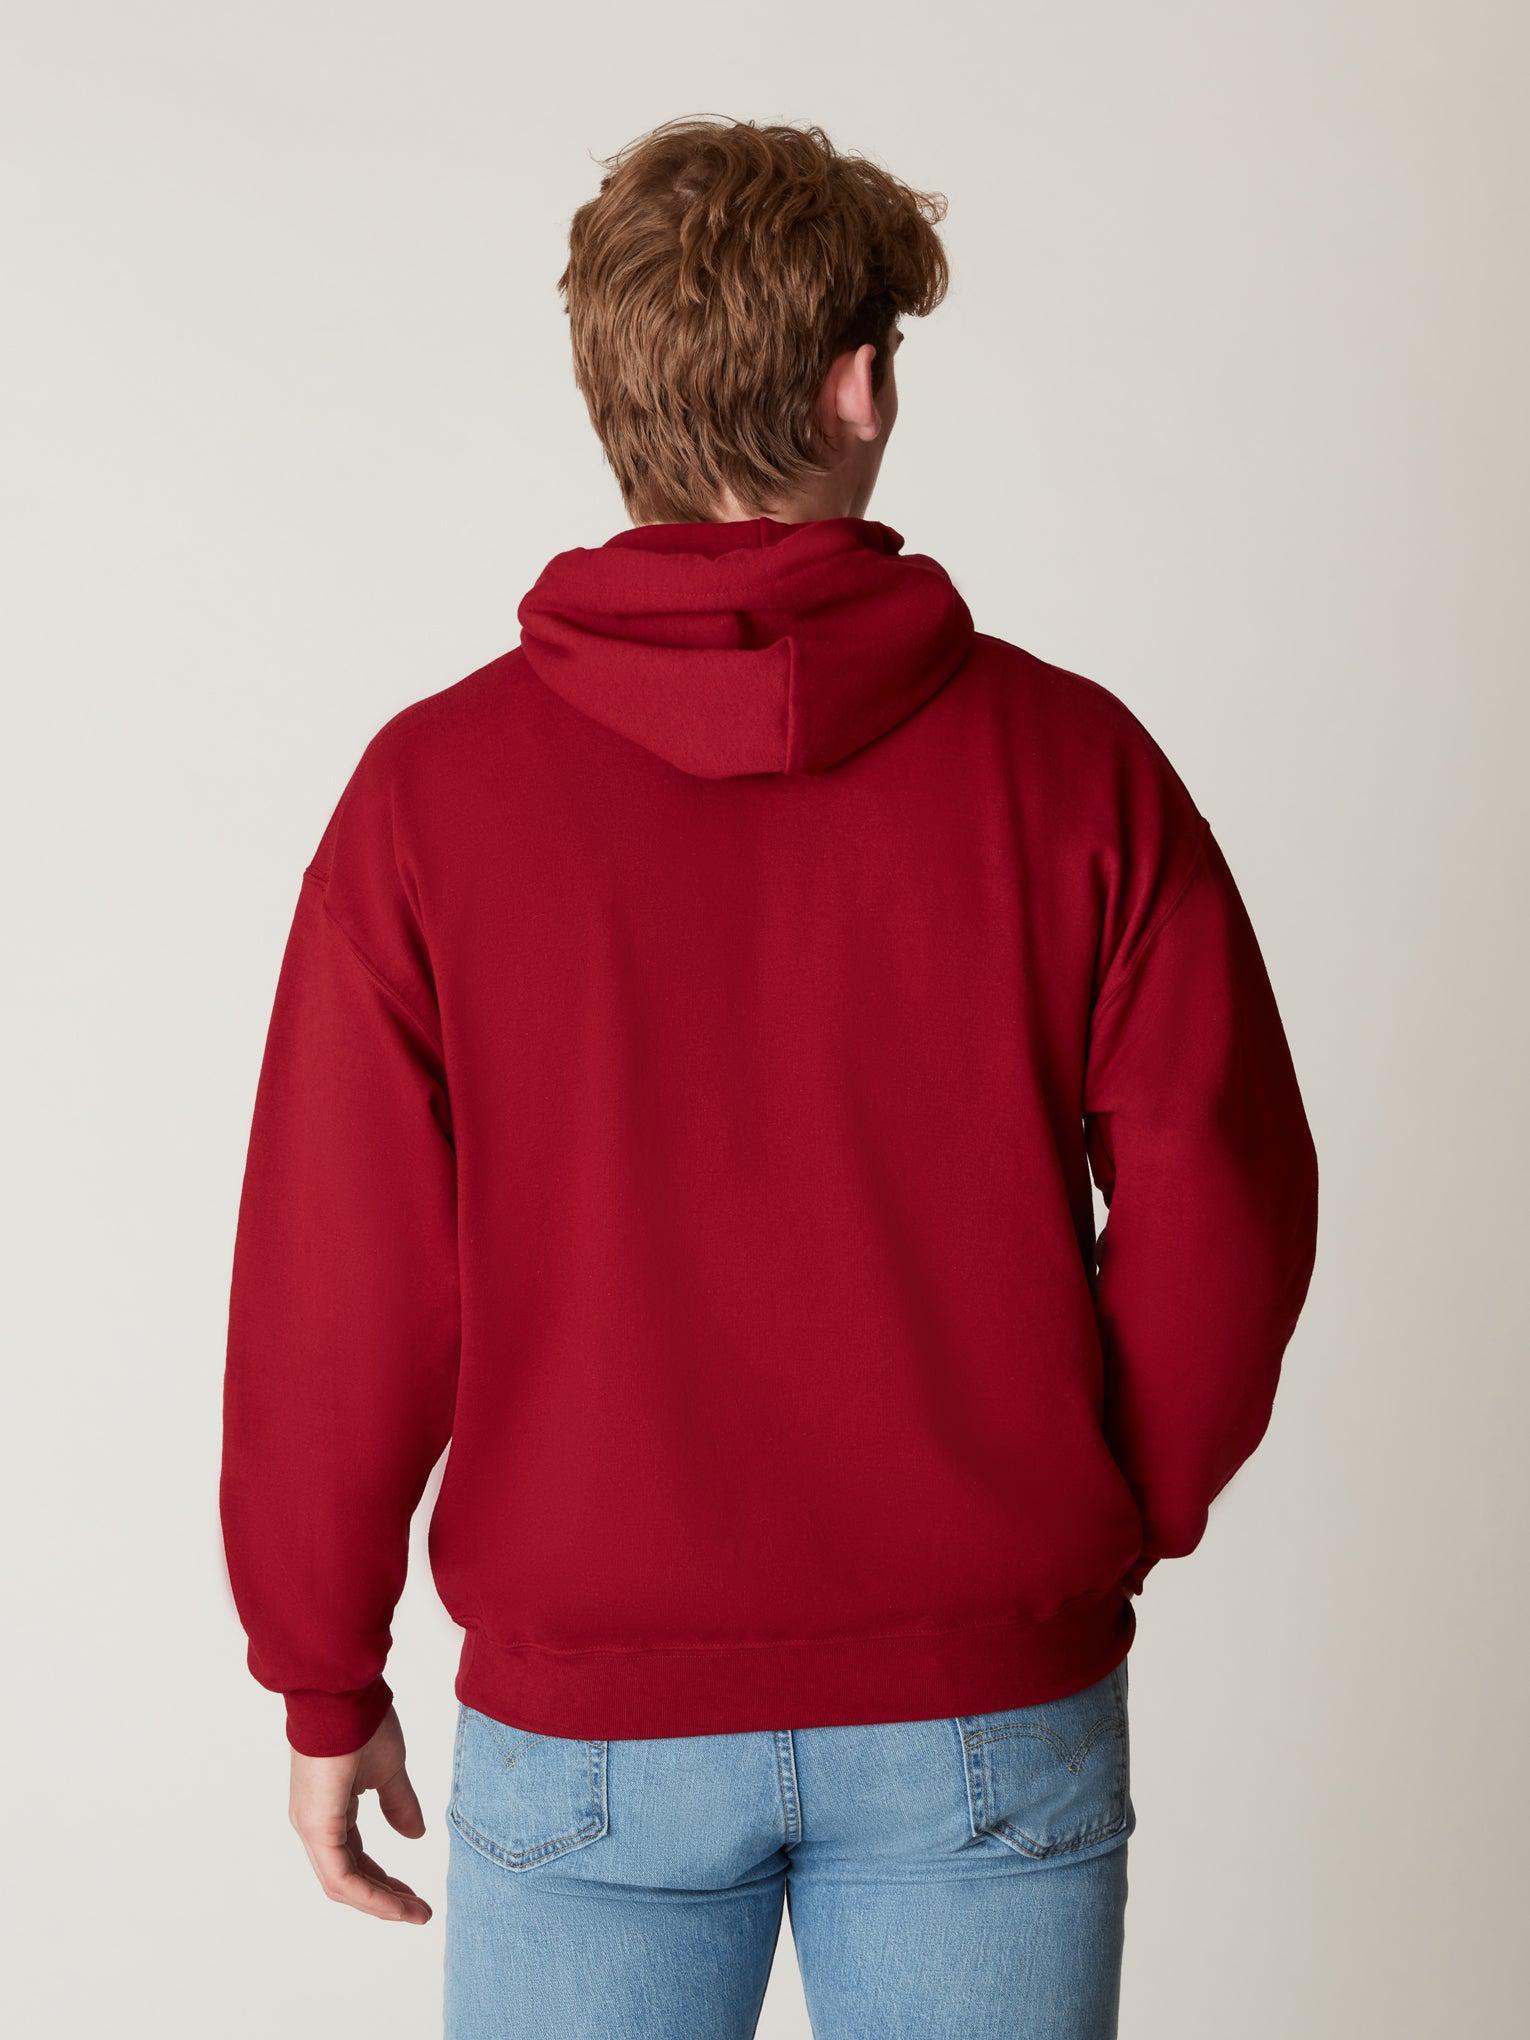 Arc Hooded The – Harvard Harvard Sweatshirt Shop